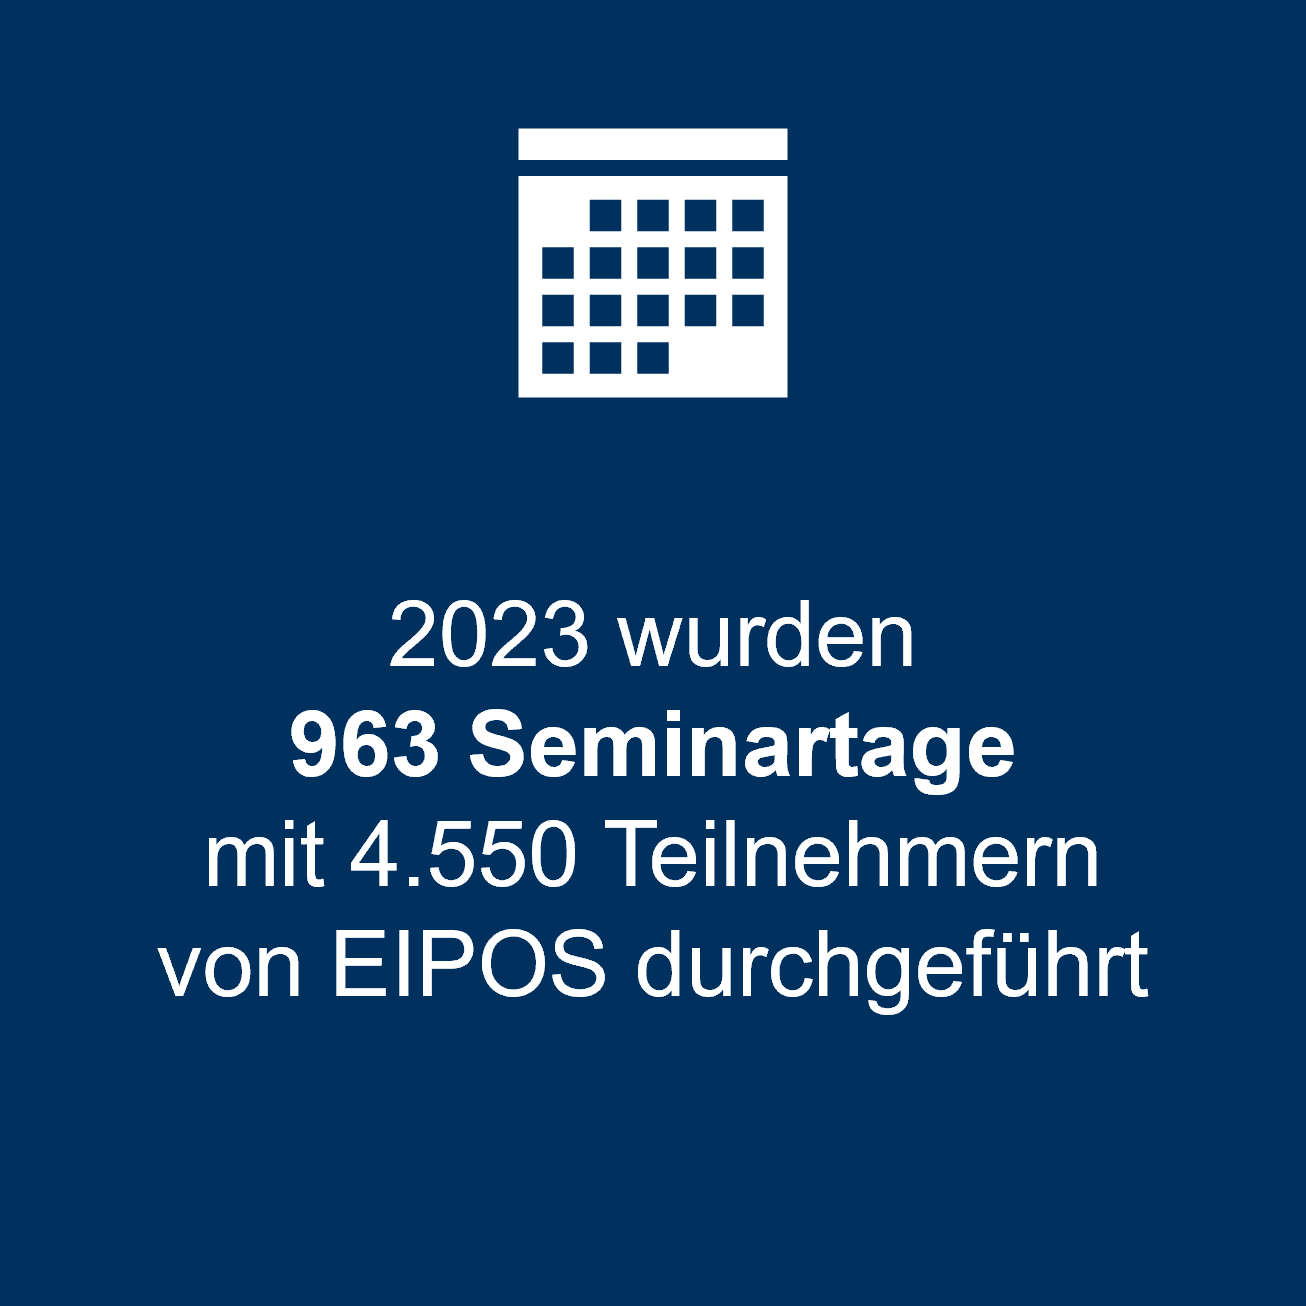 2023 wurden 963 Seminartage mit 4.550 Teilnehmern von EIPOS durchgeführt